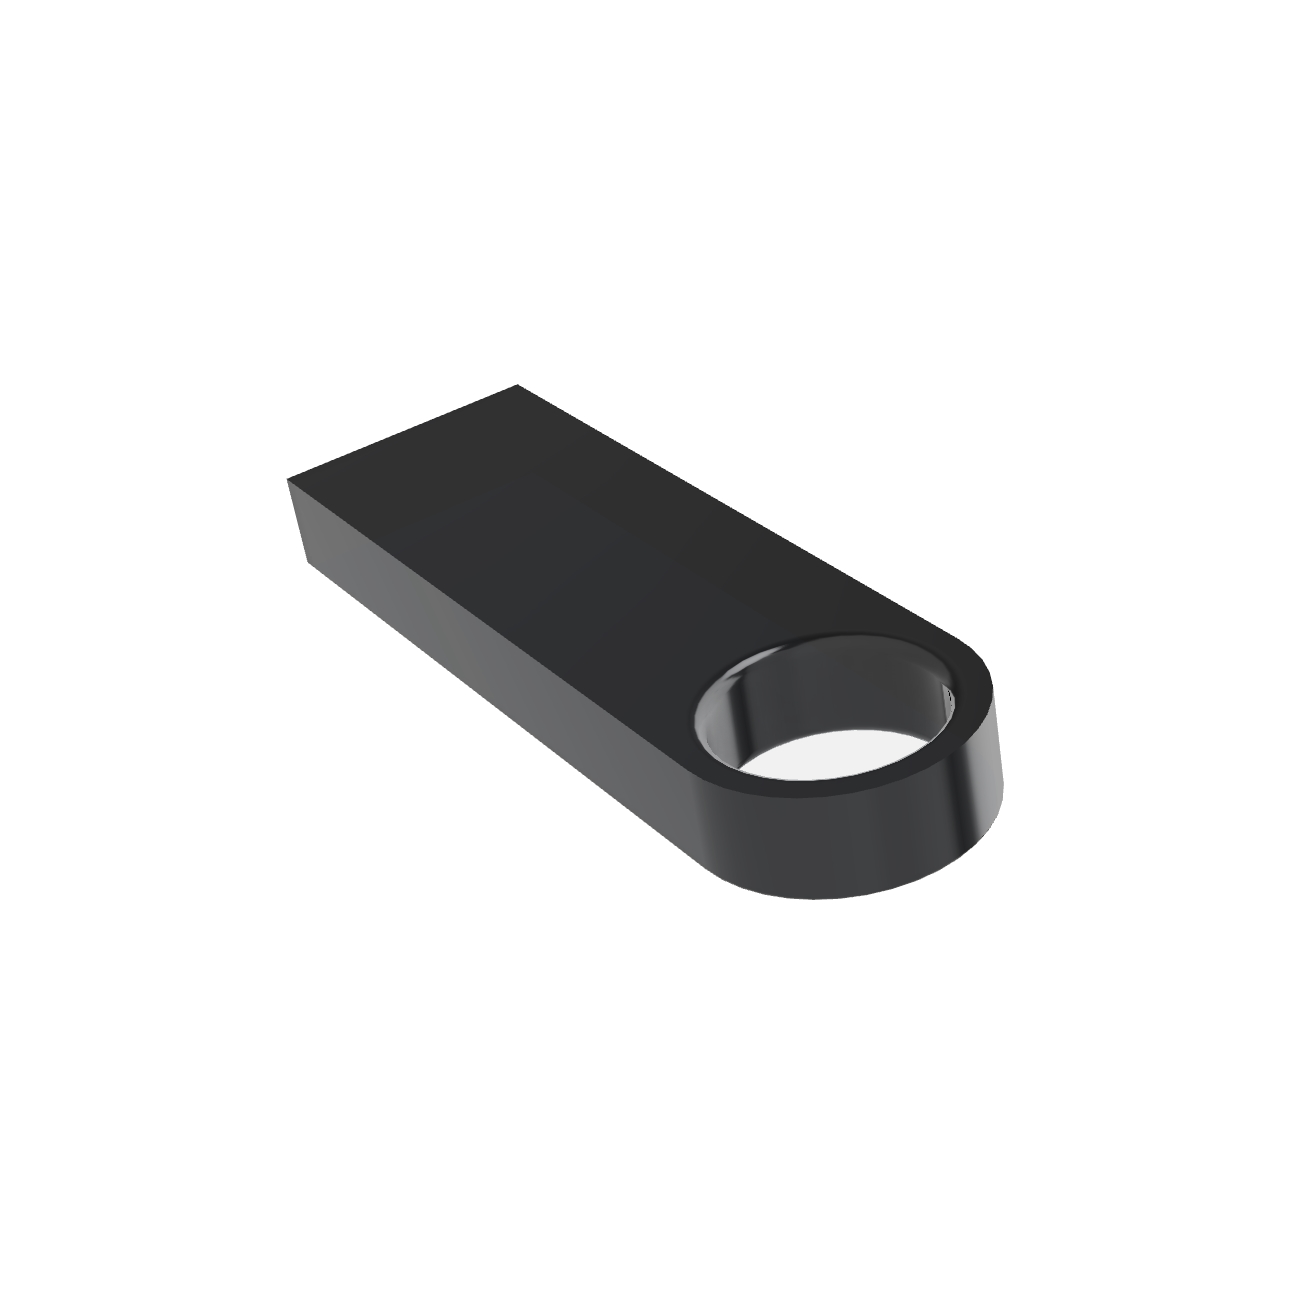 GERMANY (Schwarz, USB-Stick 1 GB) SE09 USB ®